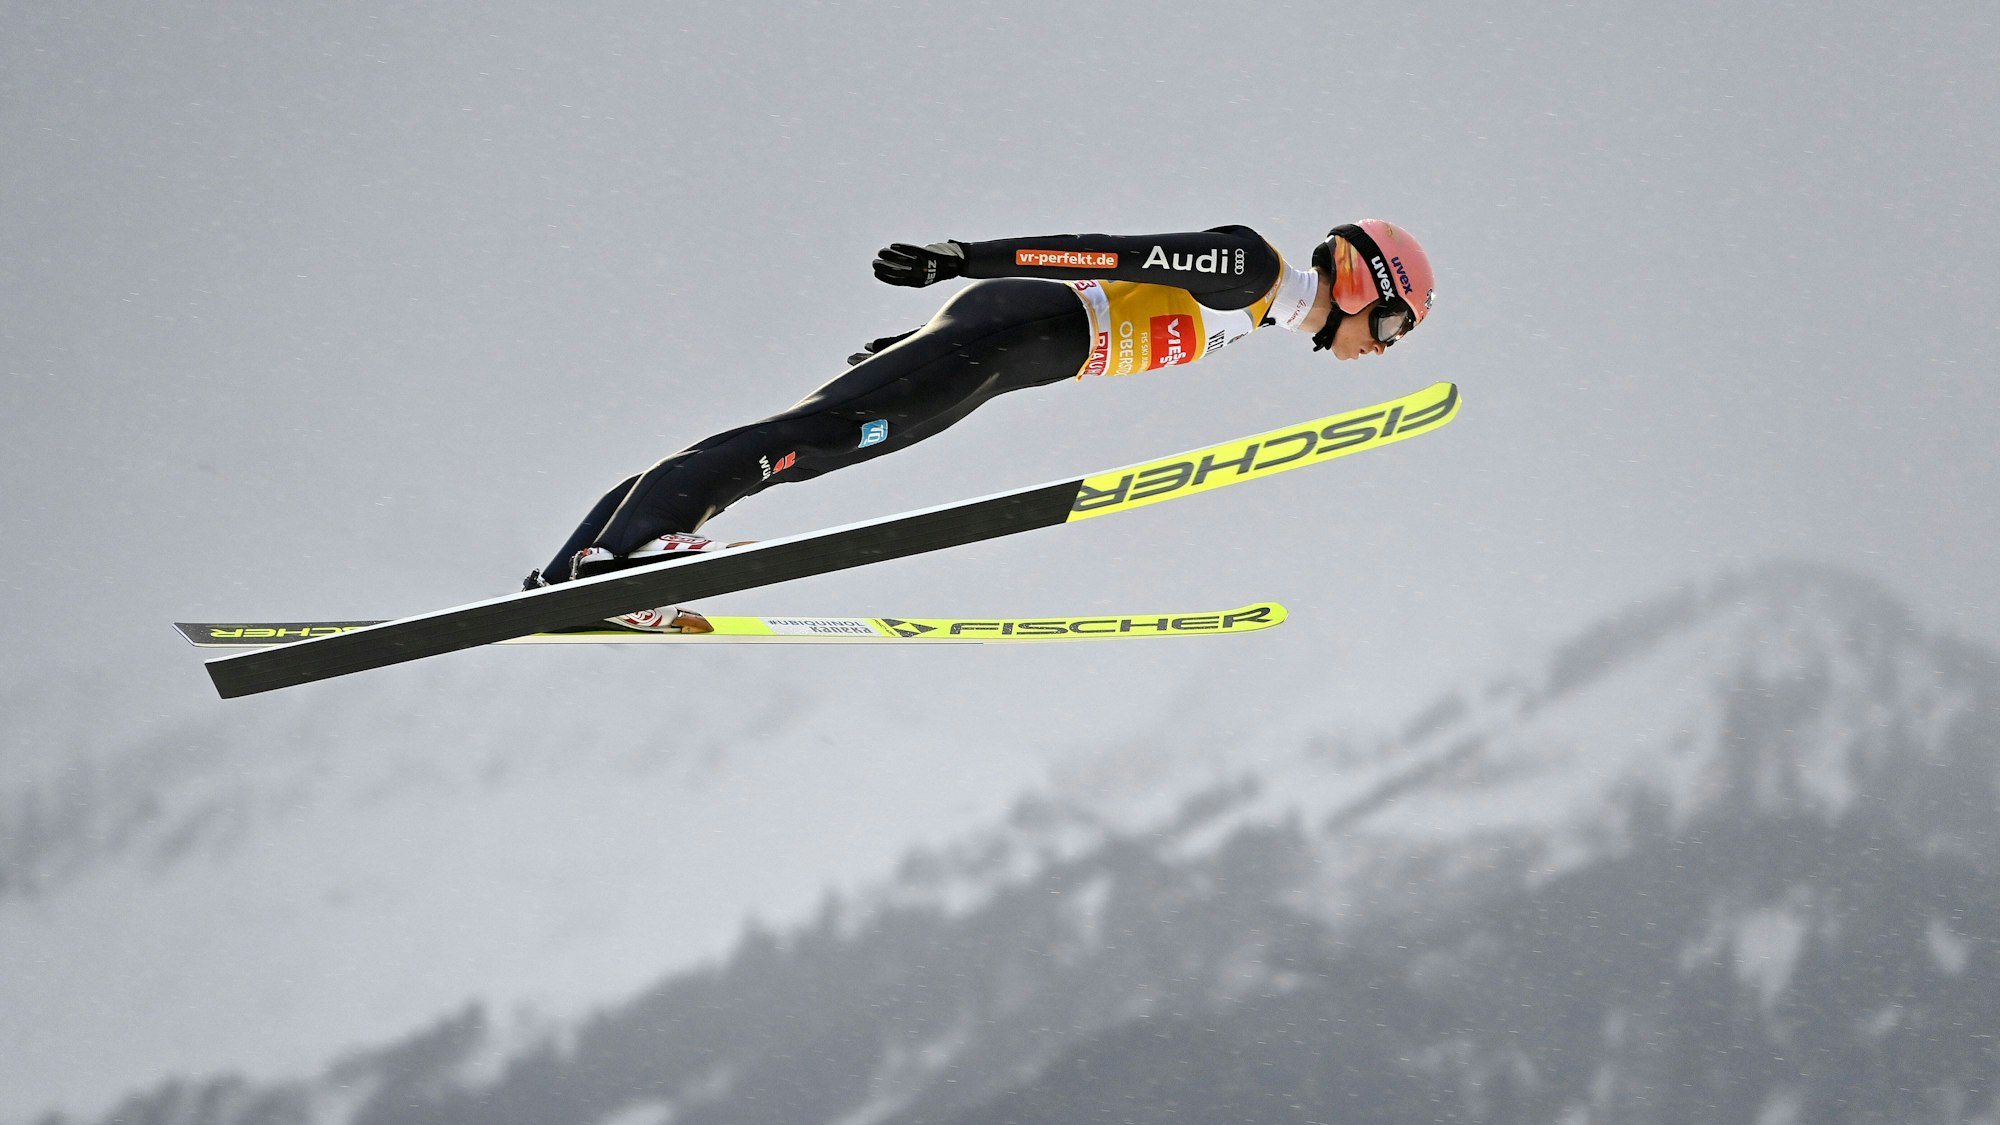 Der deutsche Skispringer Karl Geiger bei einem Sprung von seiner Heimschanze in Oberstdorf während der Tournee 2021/2022.